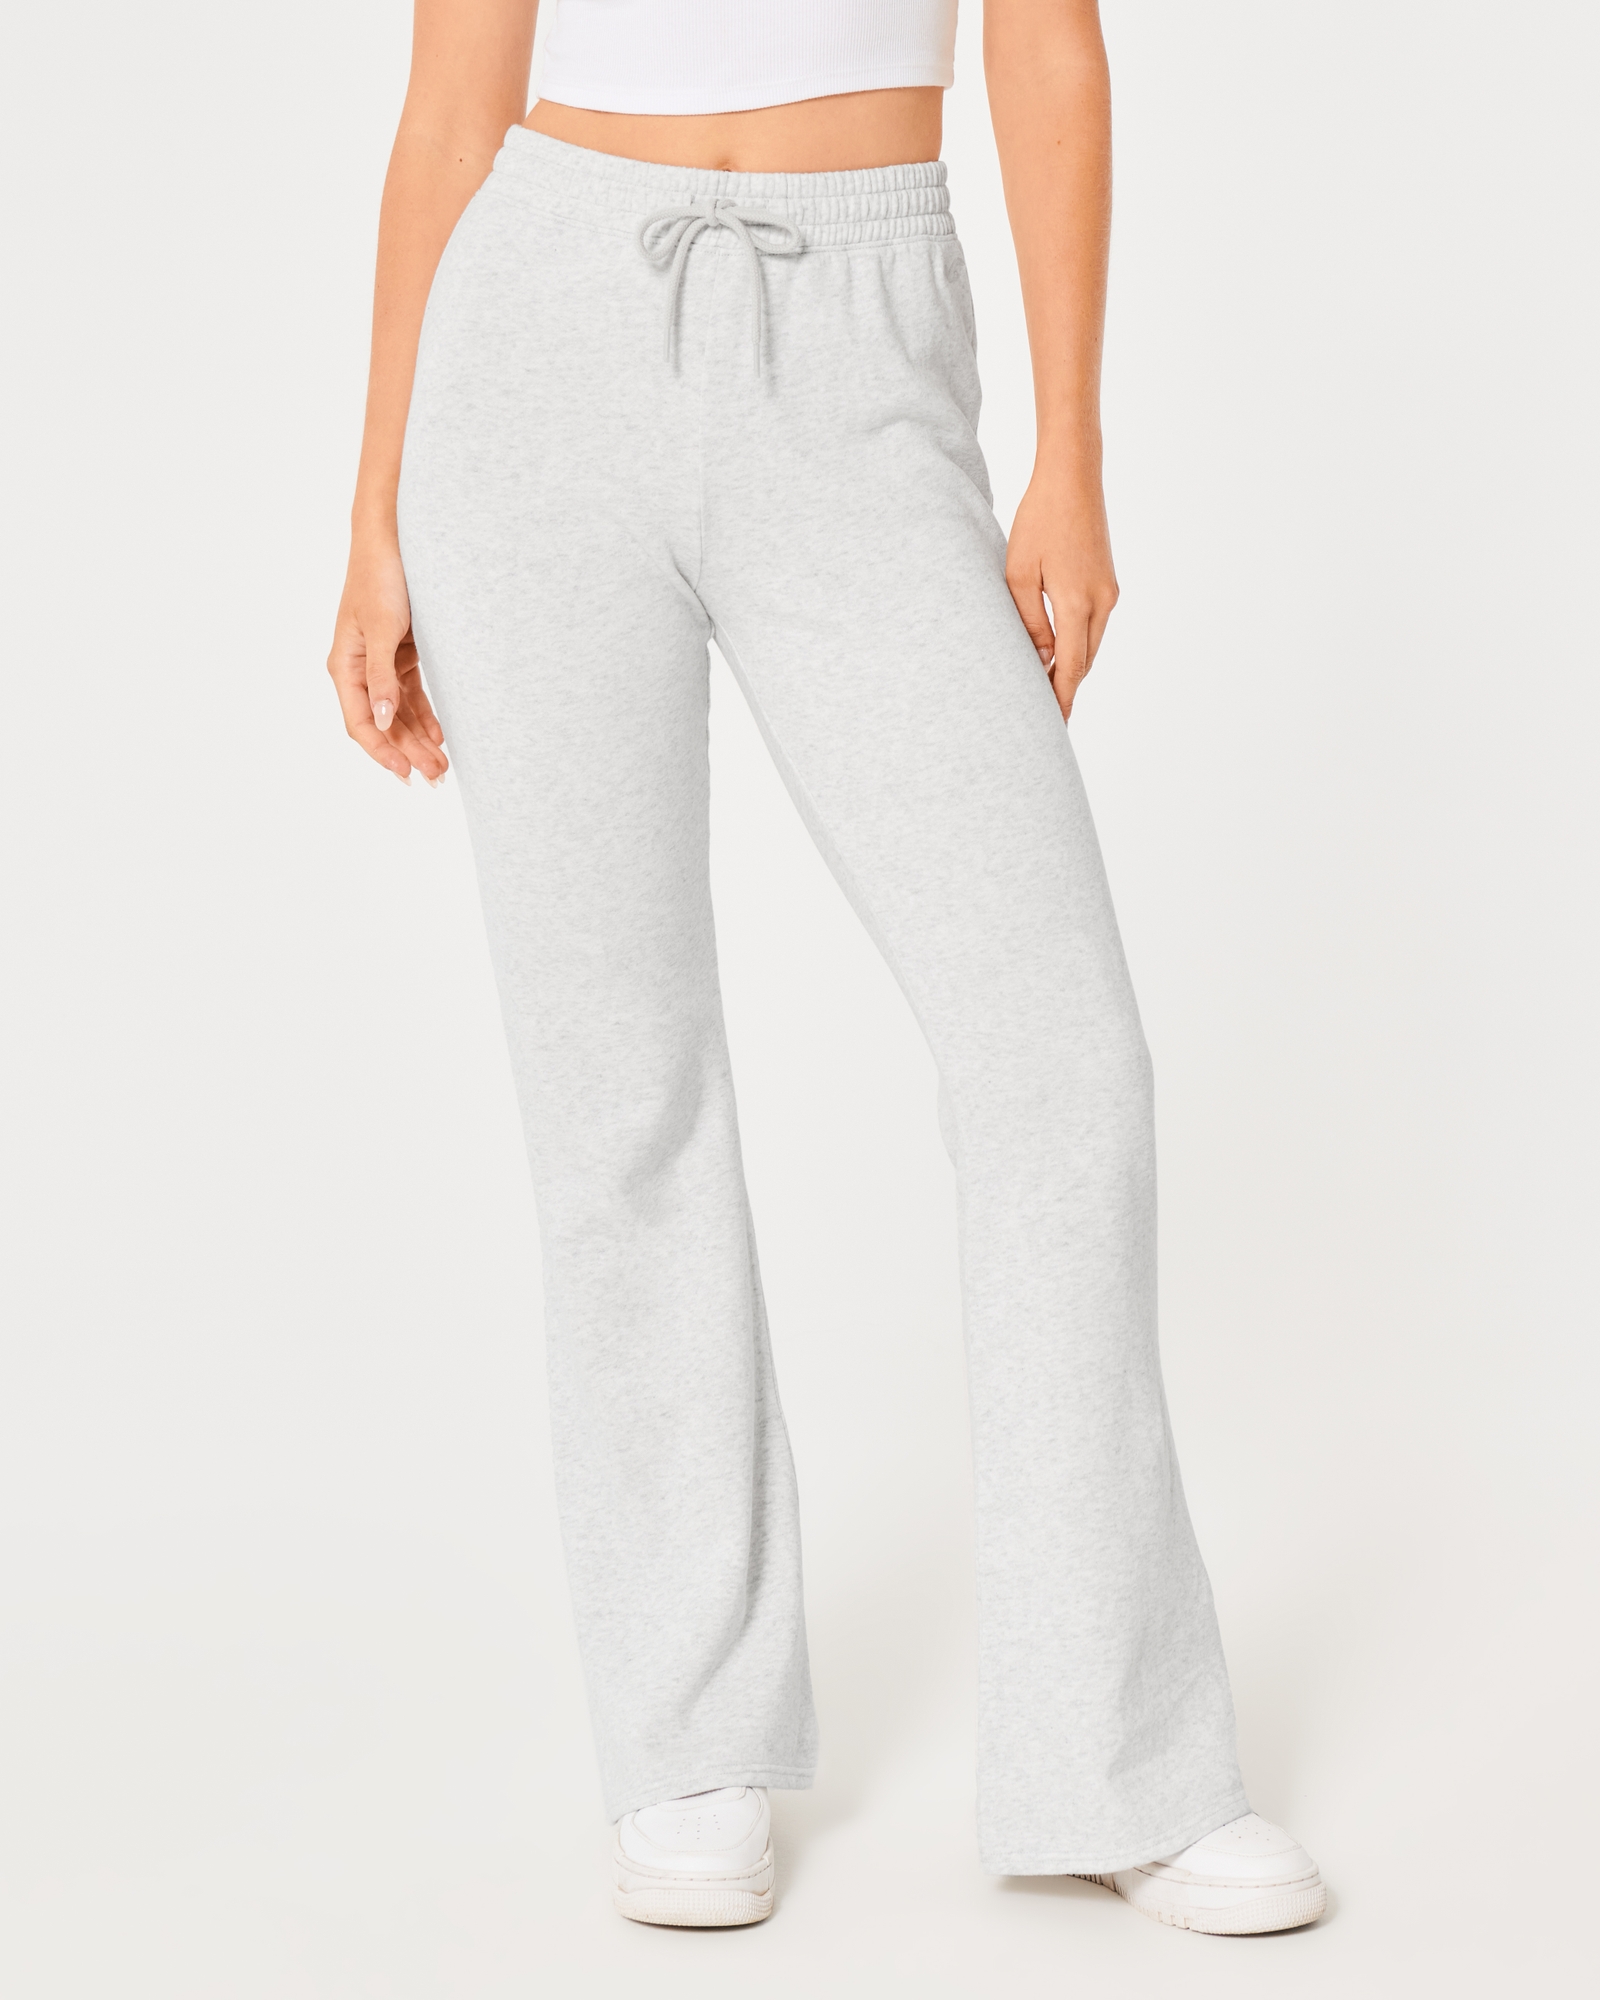 Jeans & Trousers, Hollister Fleece Grey Sweatpants